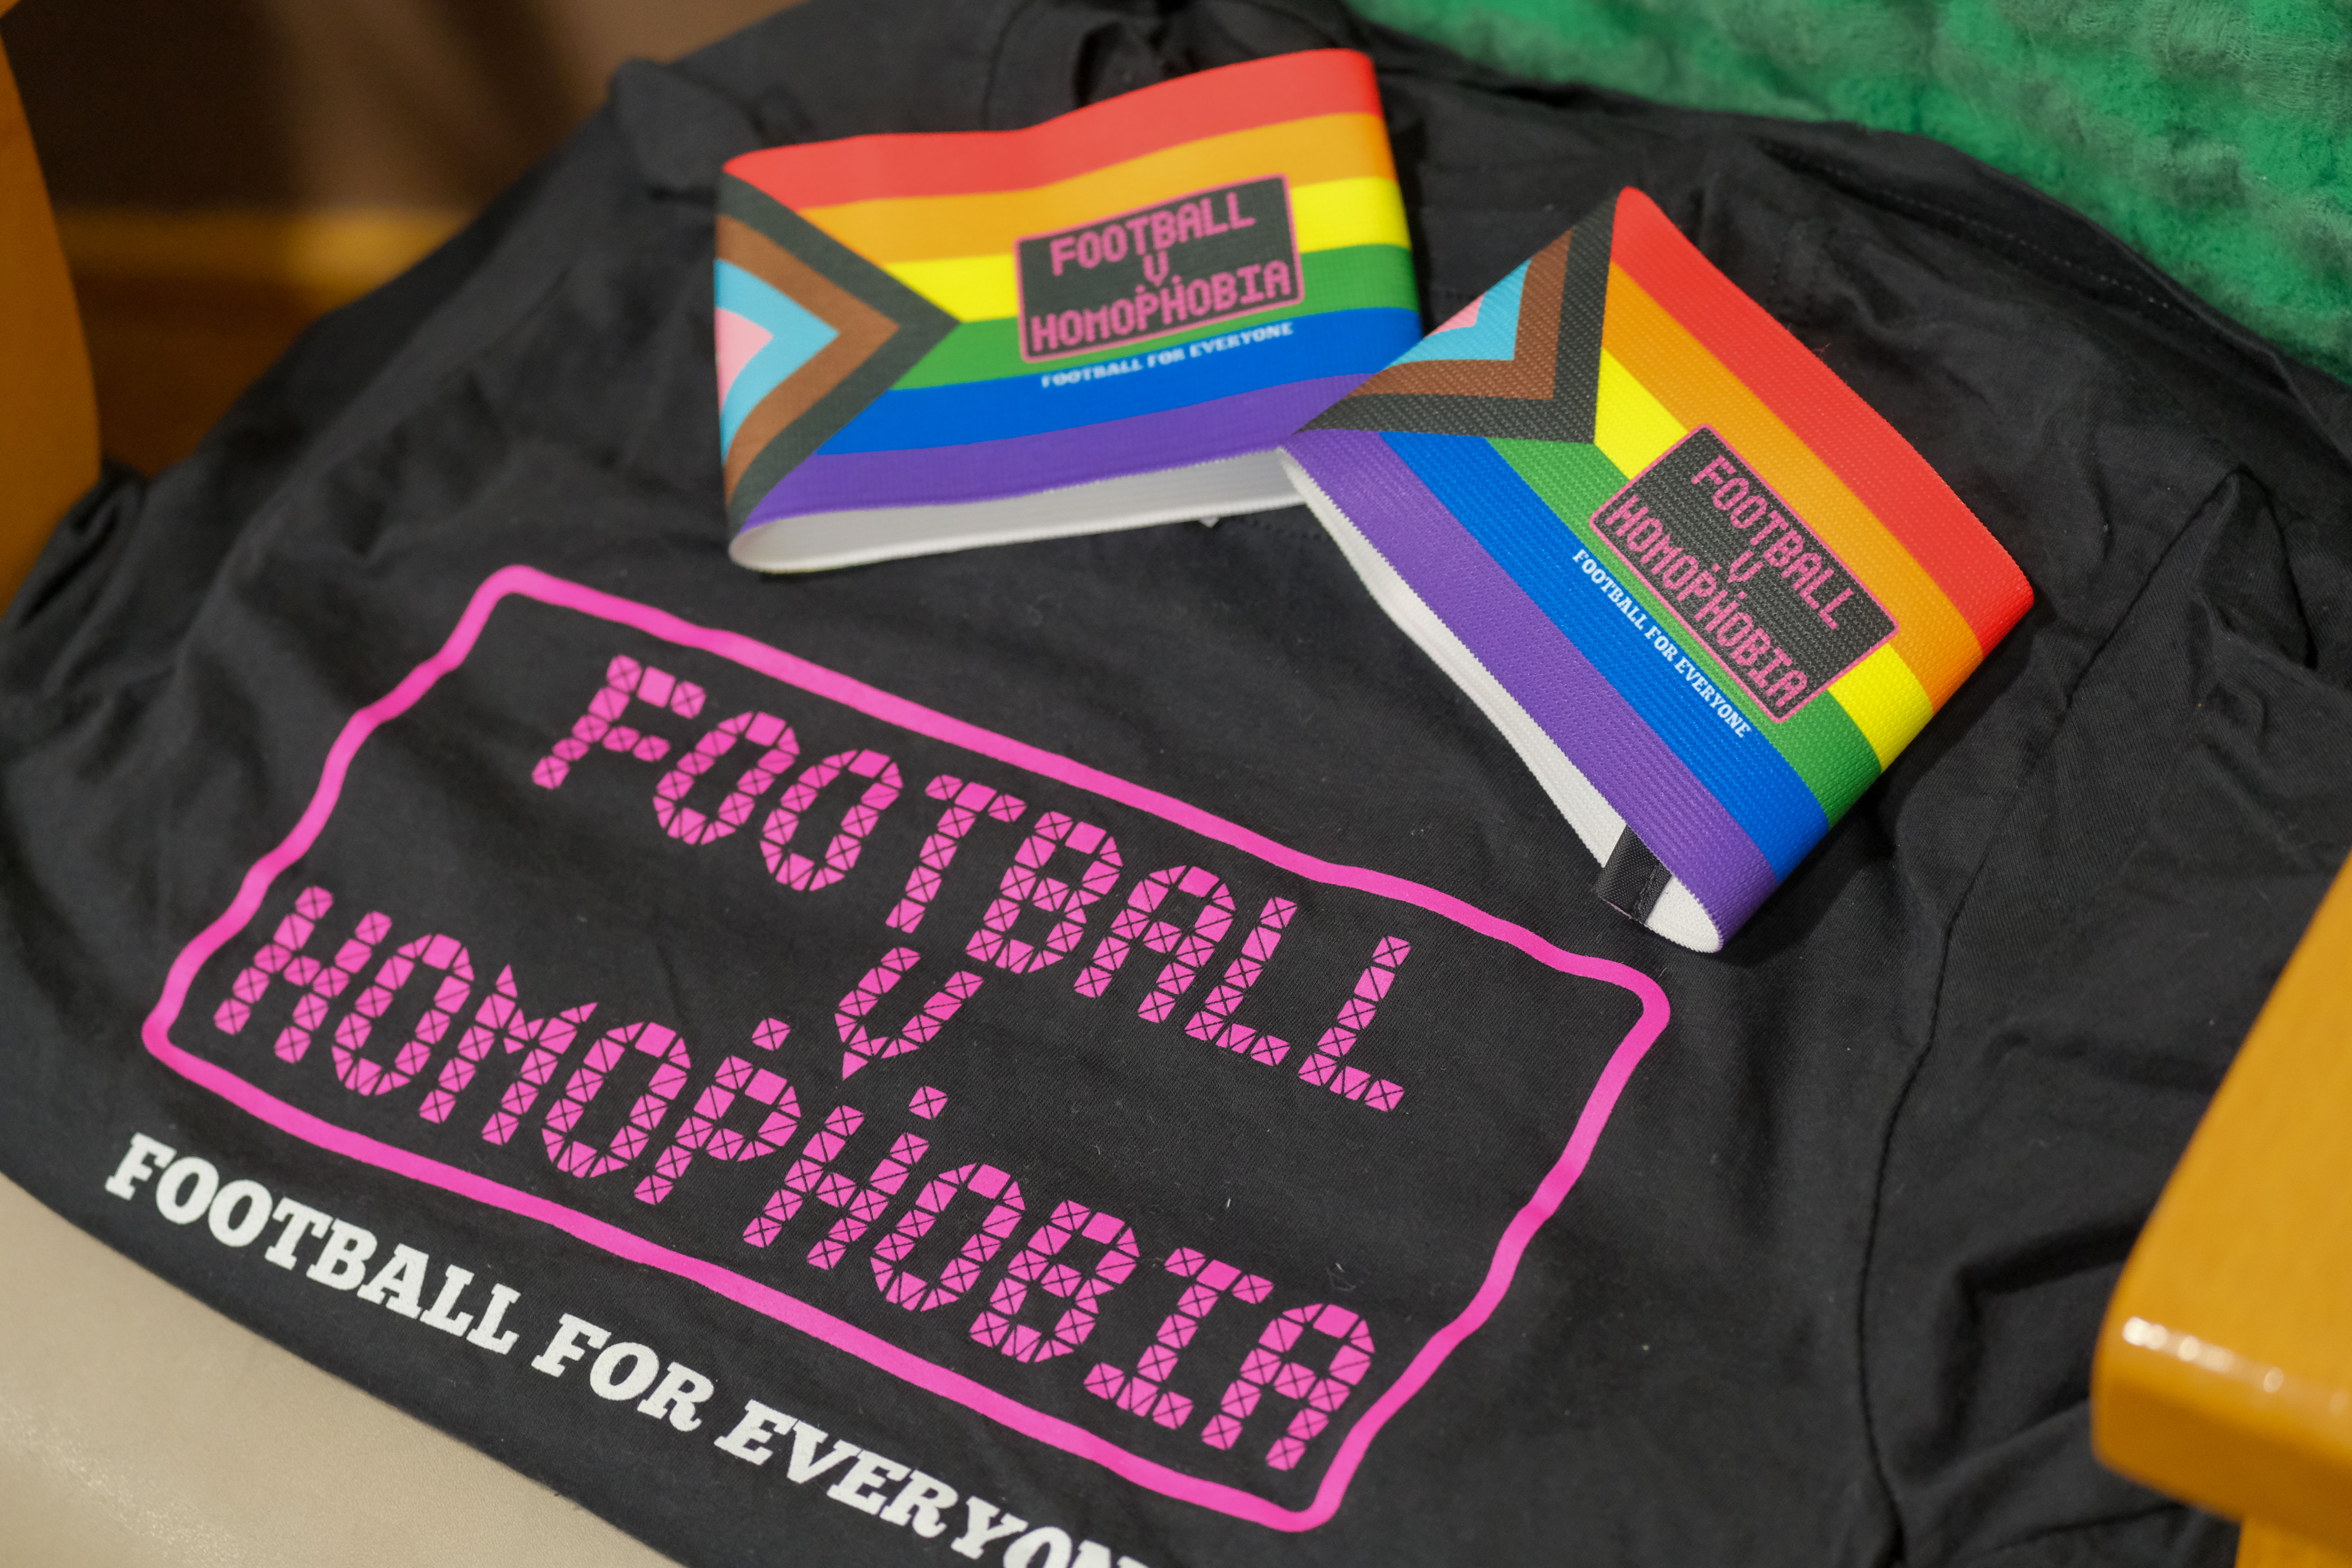 Football v Homophobia event